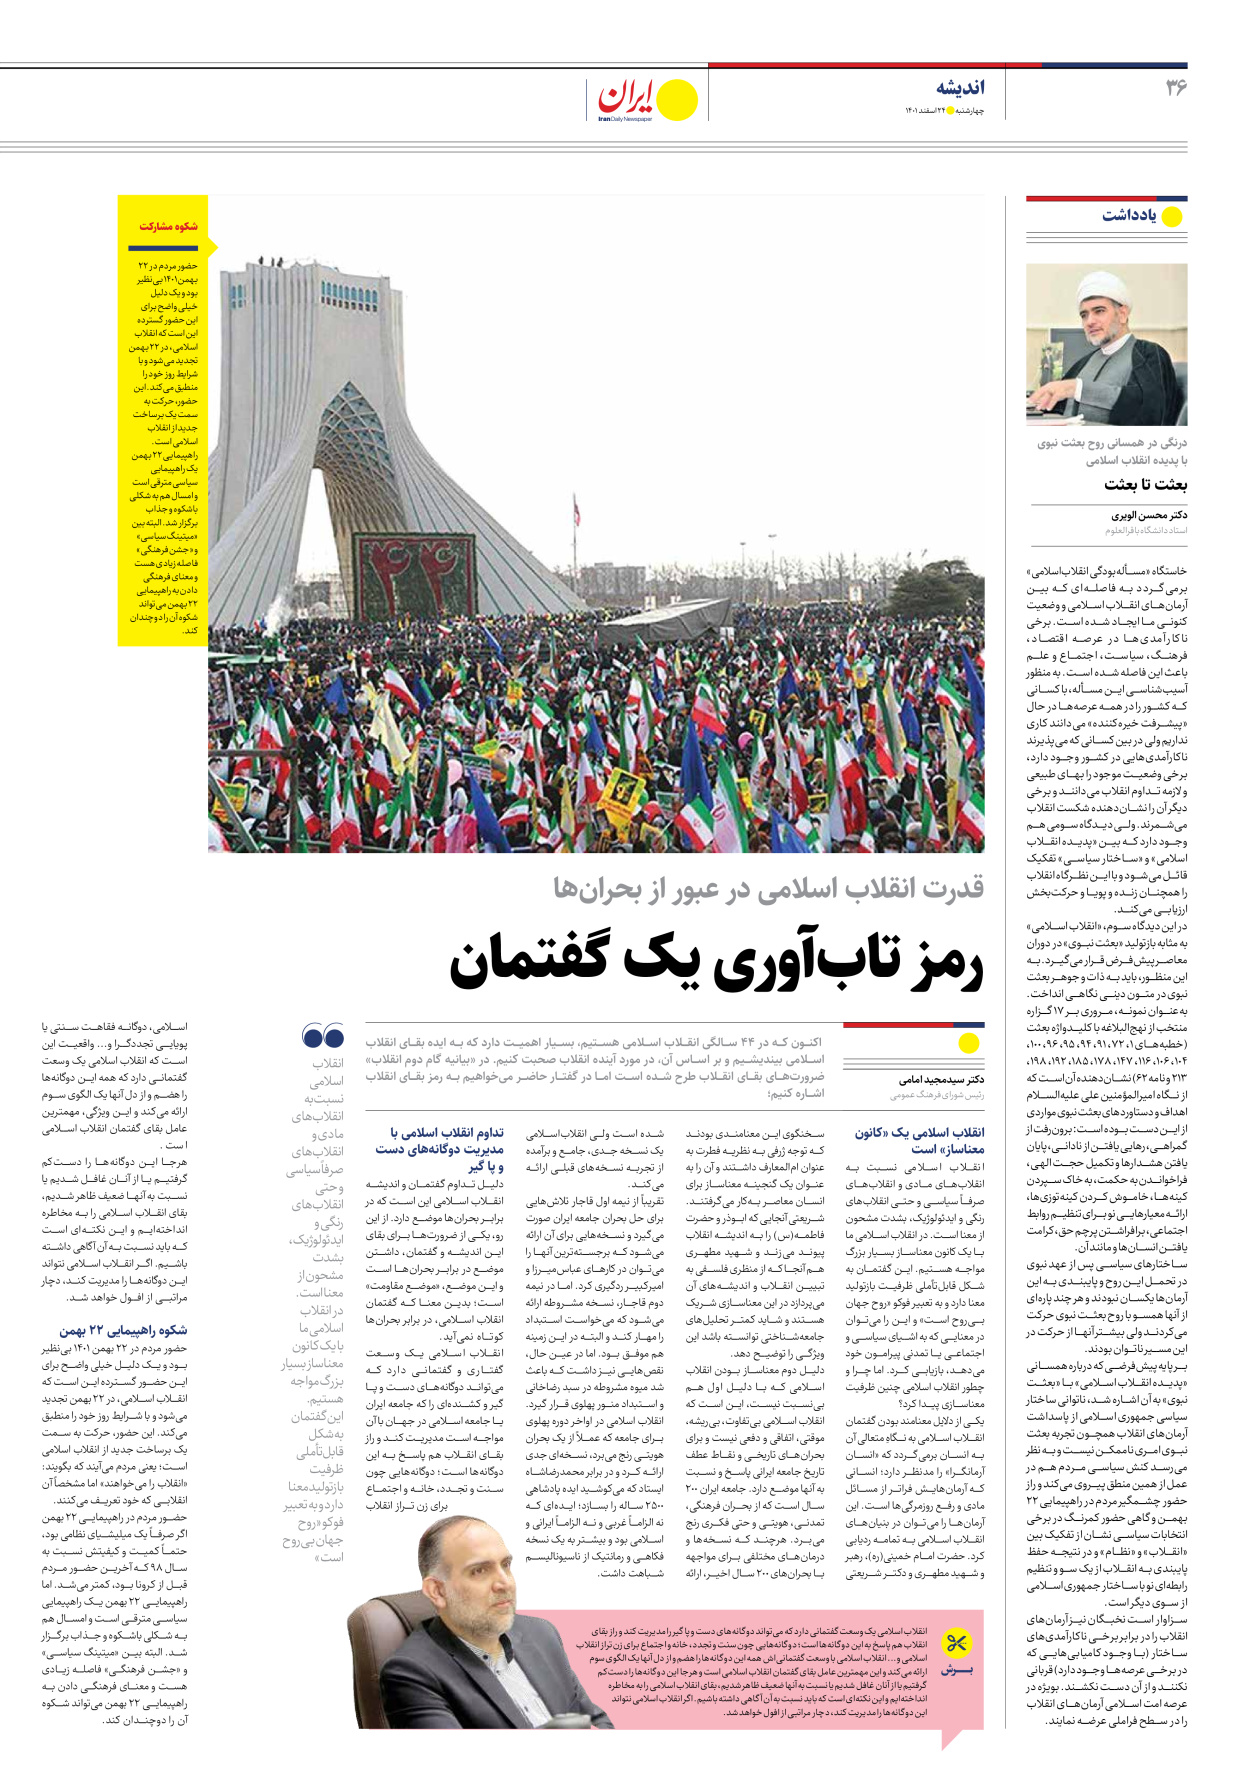 روزنامه ایران - ویژه نامه ویژه نوروز - ۲۴ اسفند ۱۴۰۱ - صفحه ۳۶